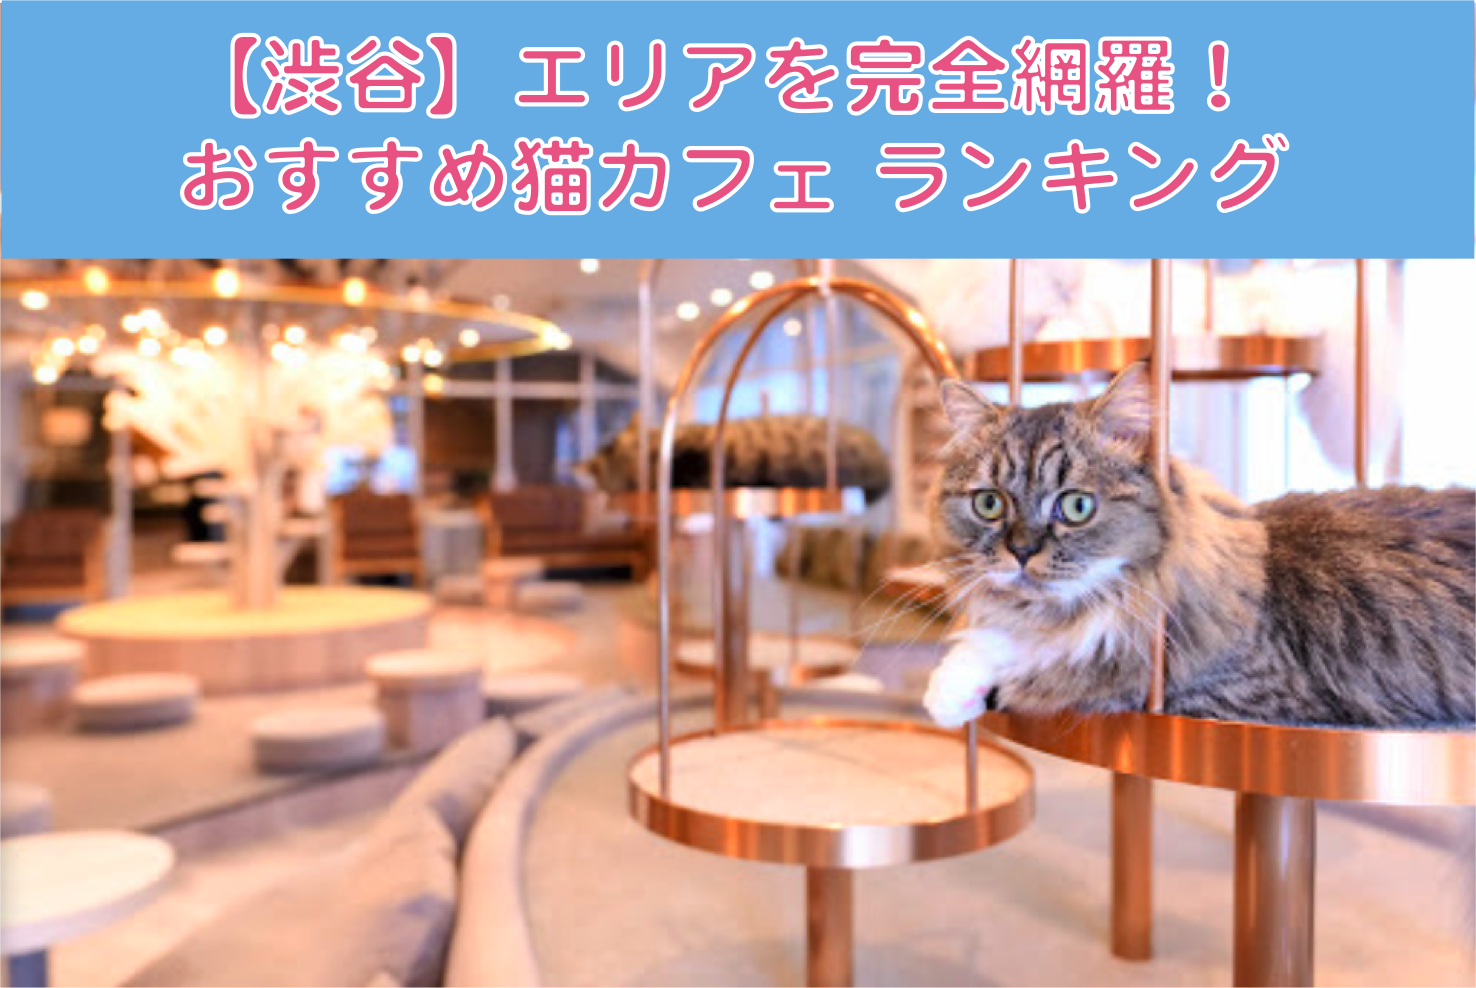 厳選 渋谷でおすすめの猫カフェランキング 東京都 エリア別おすすめ猫カフェ特集